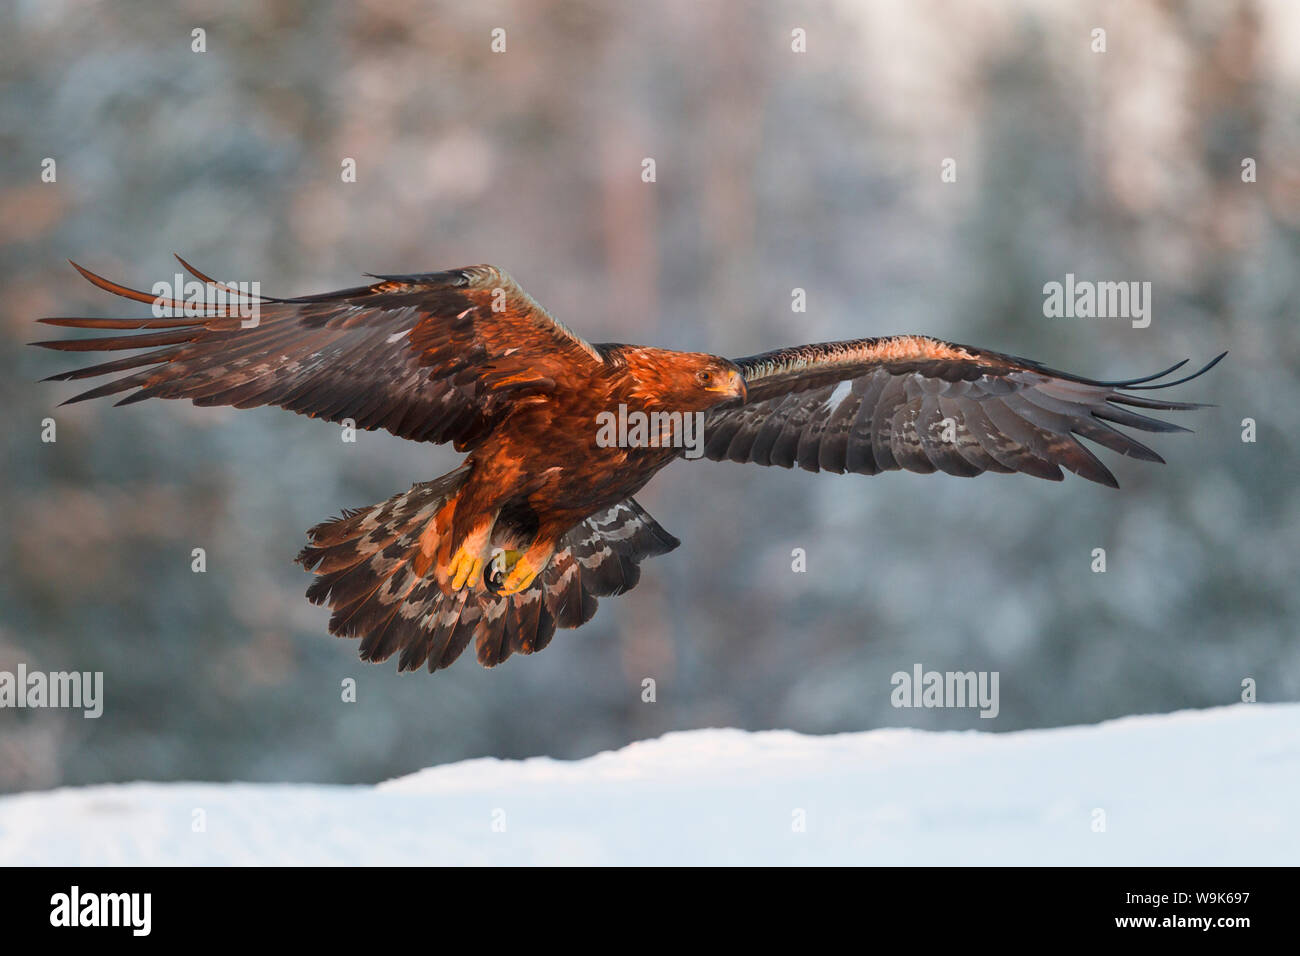 L'aigle royal (Aquila chrysaetos) prend son envol à la fin de l'après-midi d'hiver lumière au-dessus de la neige, de la taïga, Finlande, Scandinavie, Europe Banque D'Images